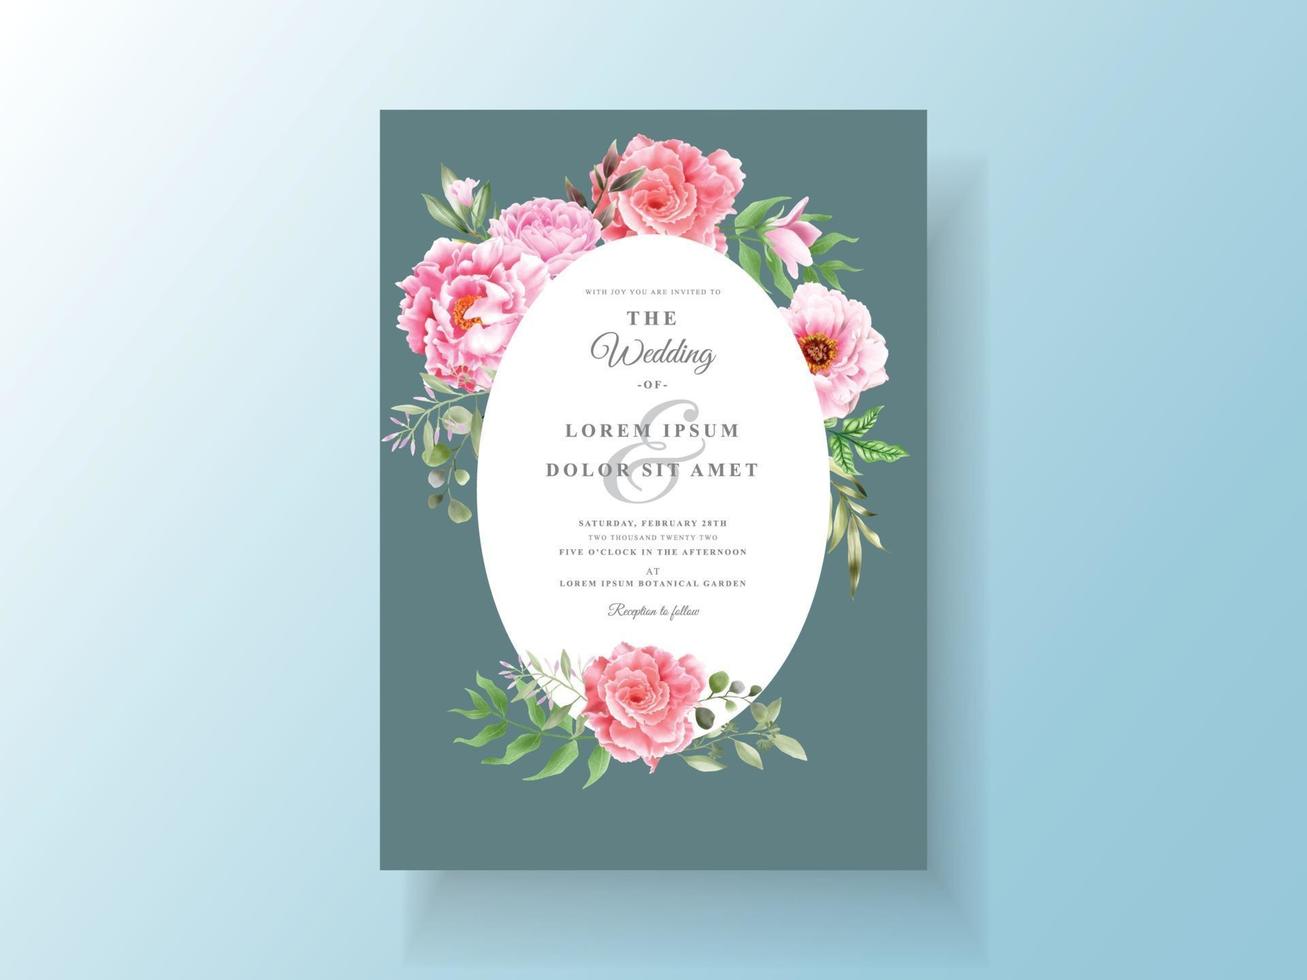 Romantic wedding invitation cards floral watercolor vector